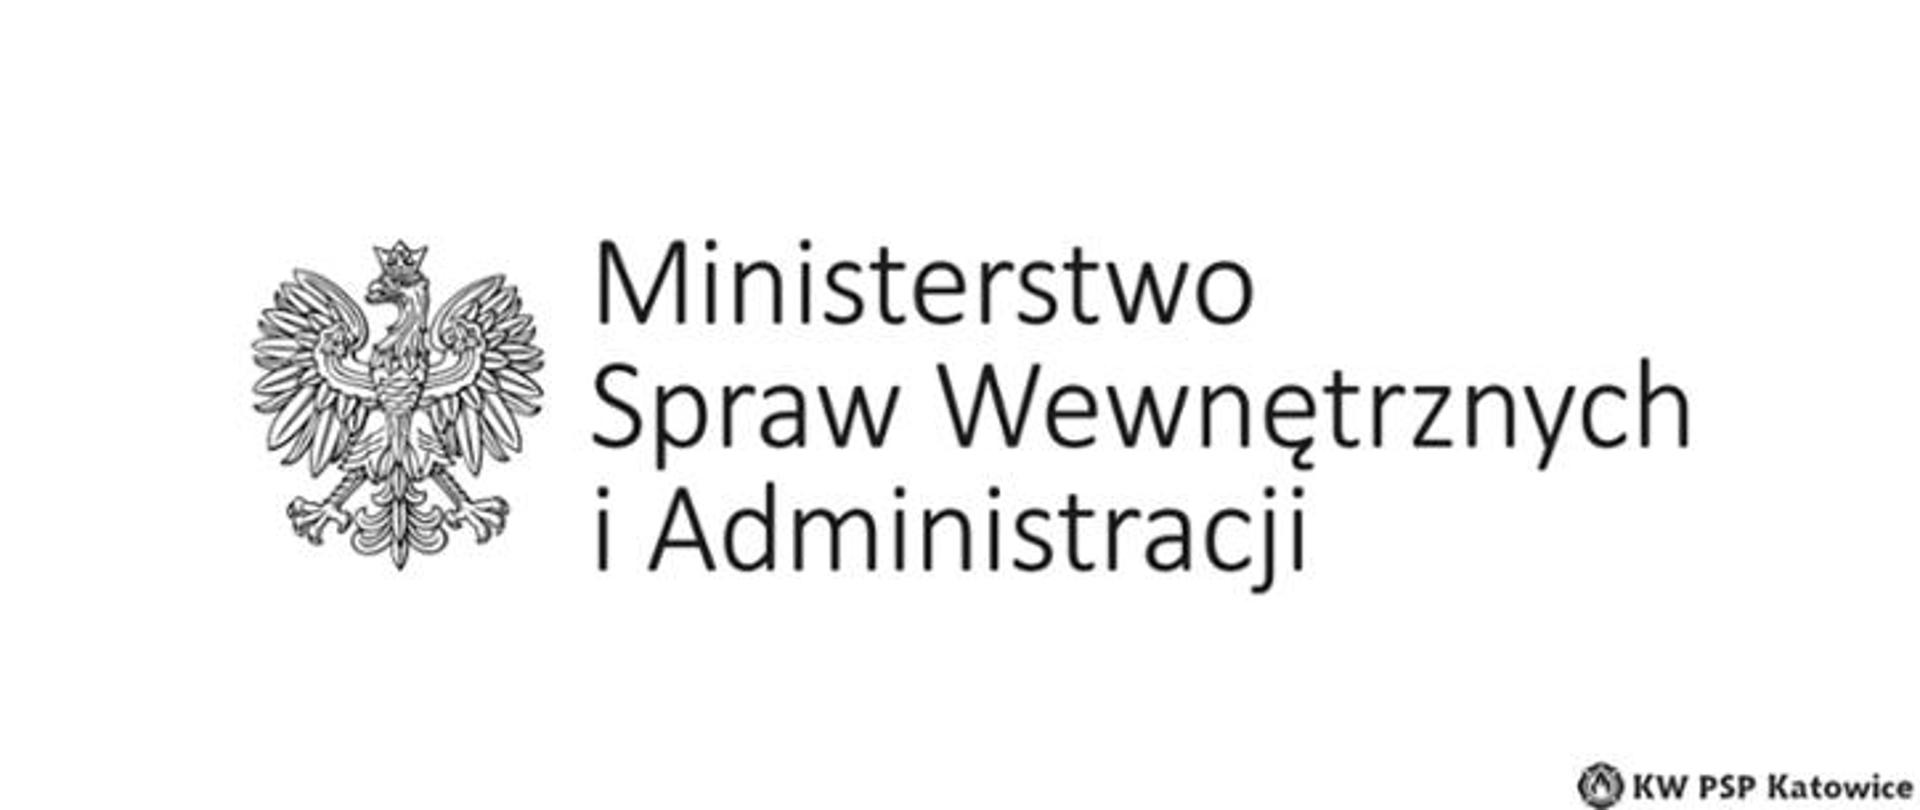 Zdjęcie przedstawia czarnobiałego orła w koronie z napisem Ministerstwo Spraw Wewnętrznych i Administracji